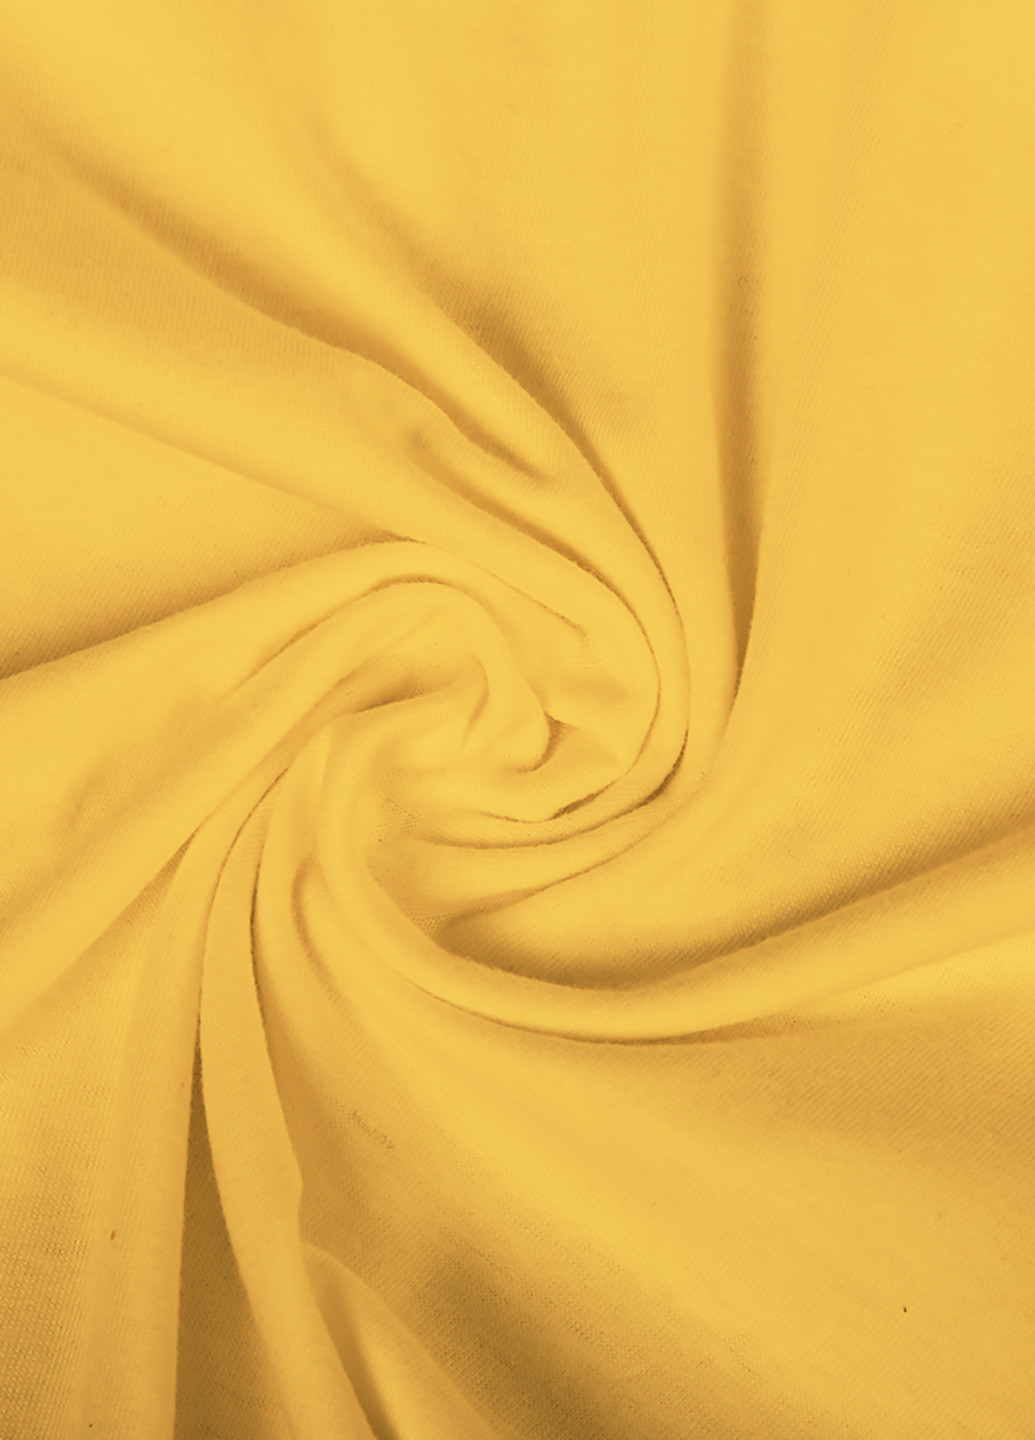 Желтая демисезонная футболка детская пубг пабг (pubg)(9224-1188) MobiPrint